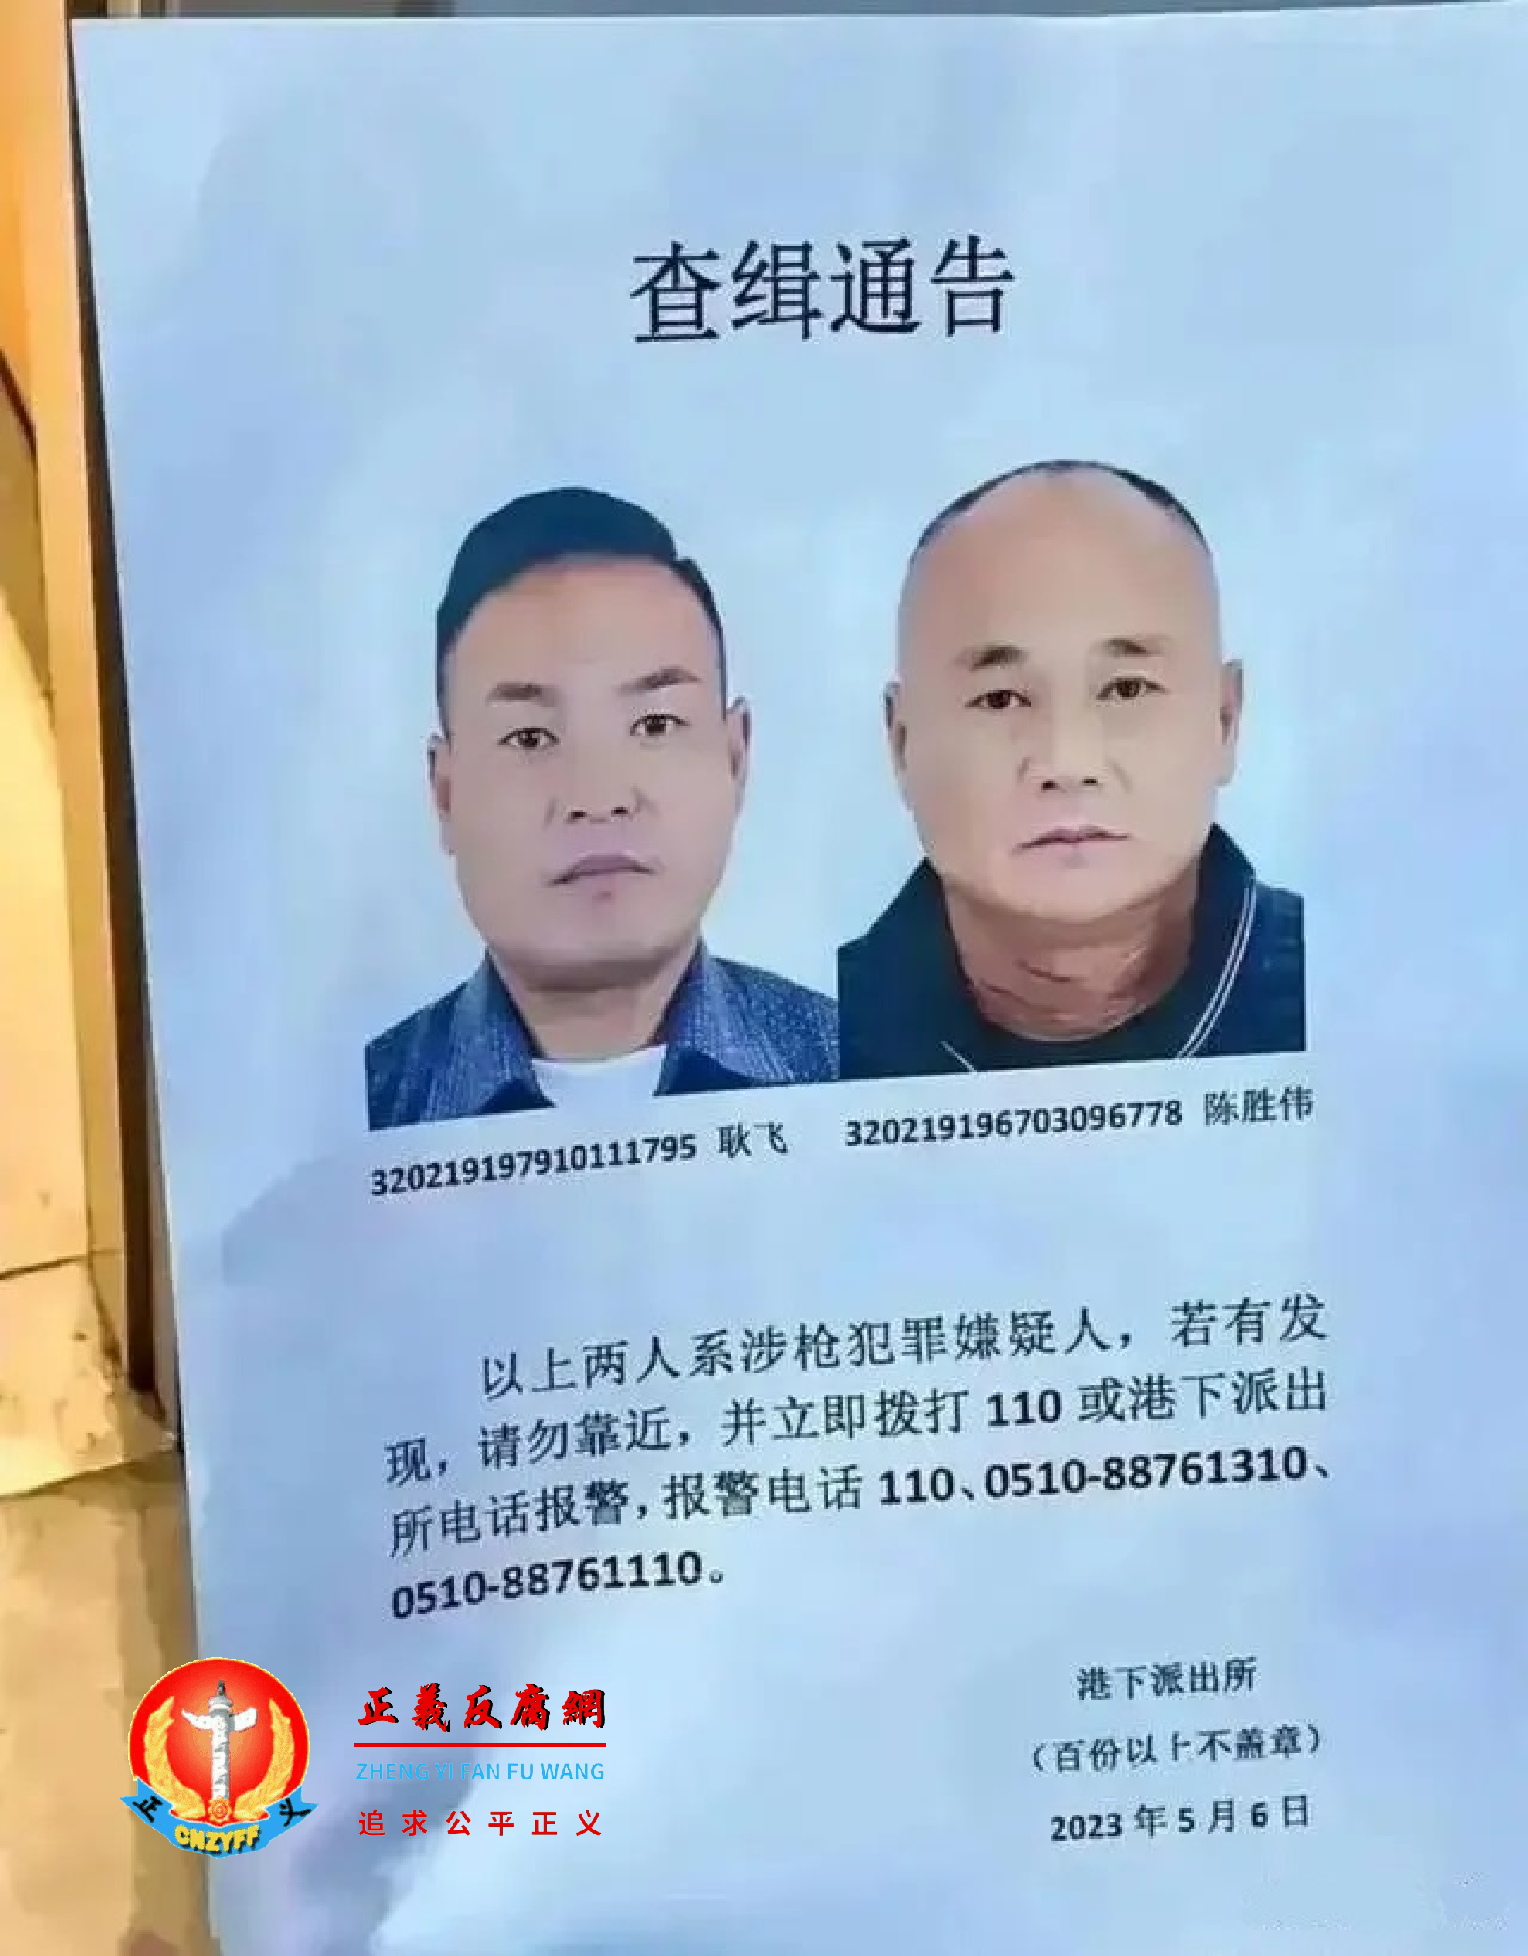 网上流传着一张两人的协查通告，显示发布通告的是港下派出所发出一份《查缉通告》涉枪犯罪嫌疑人耿飞与陈胜伟.png